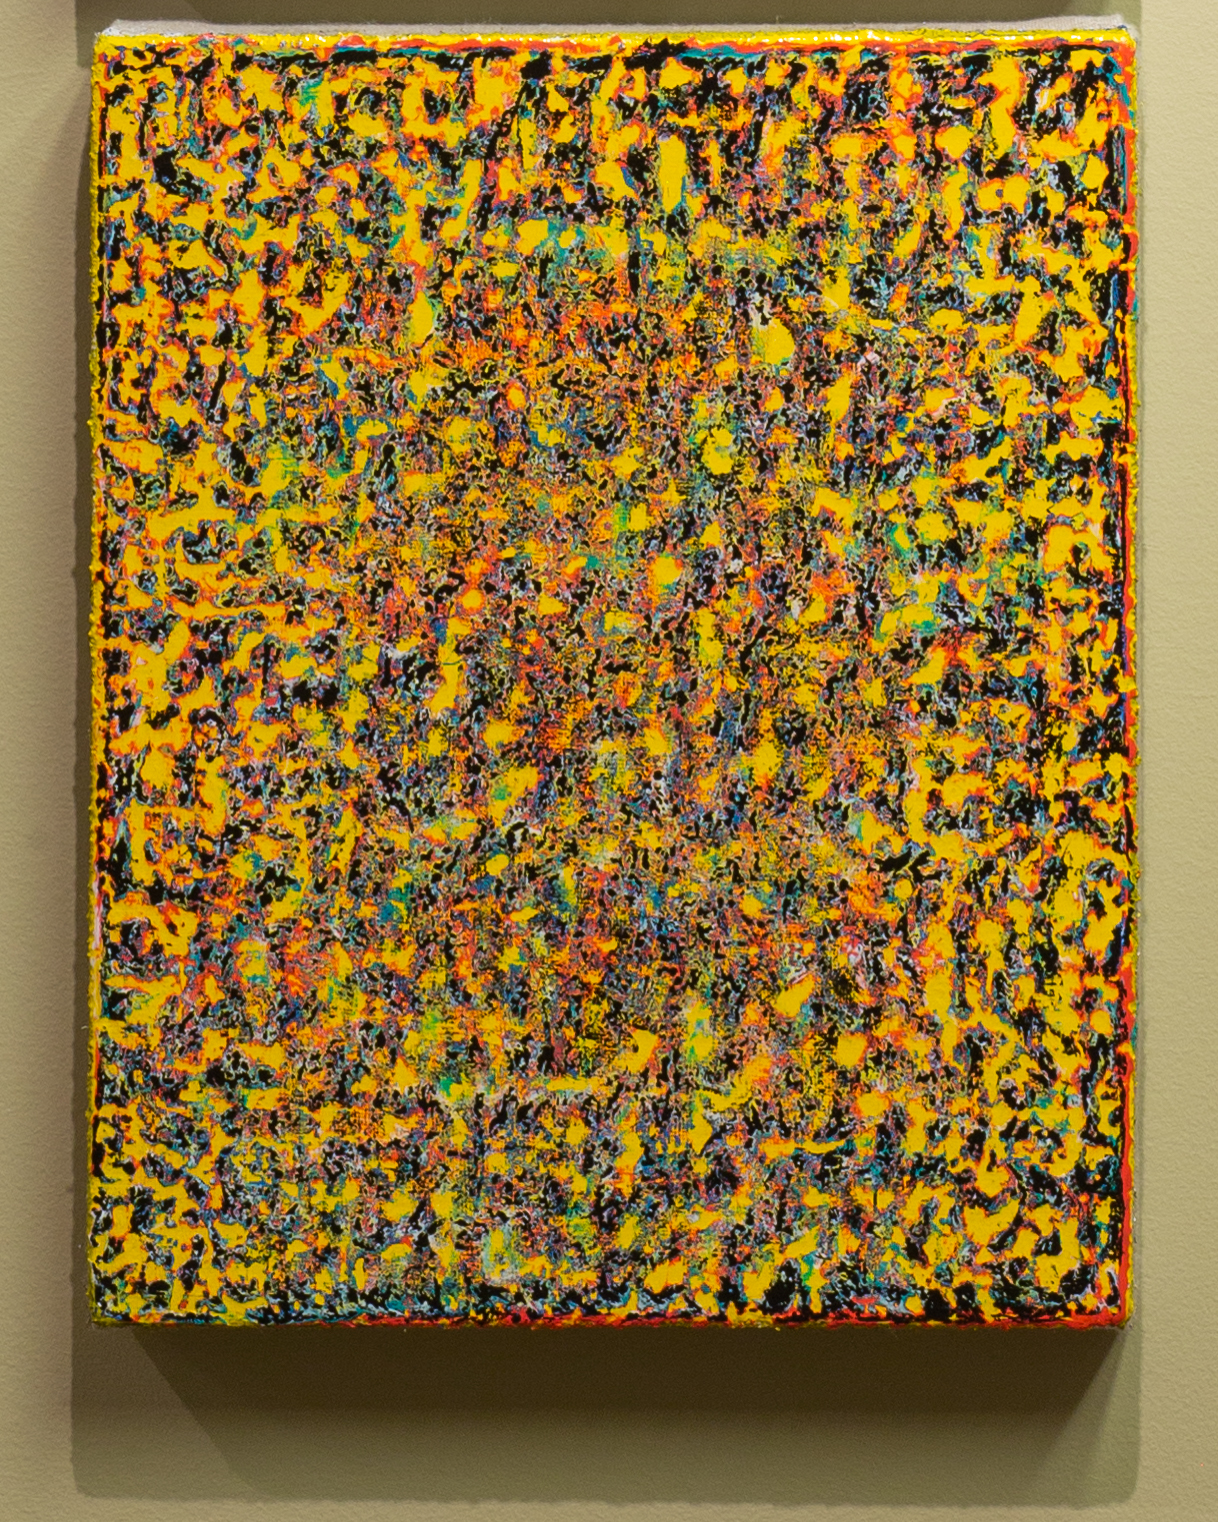 Daniel Bruce Hughes, Untitled, 10" x 8", oil-based enamel on linen, 2019